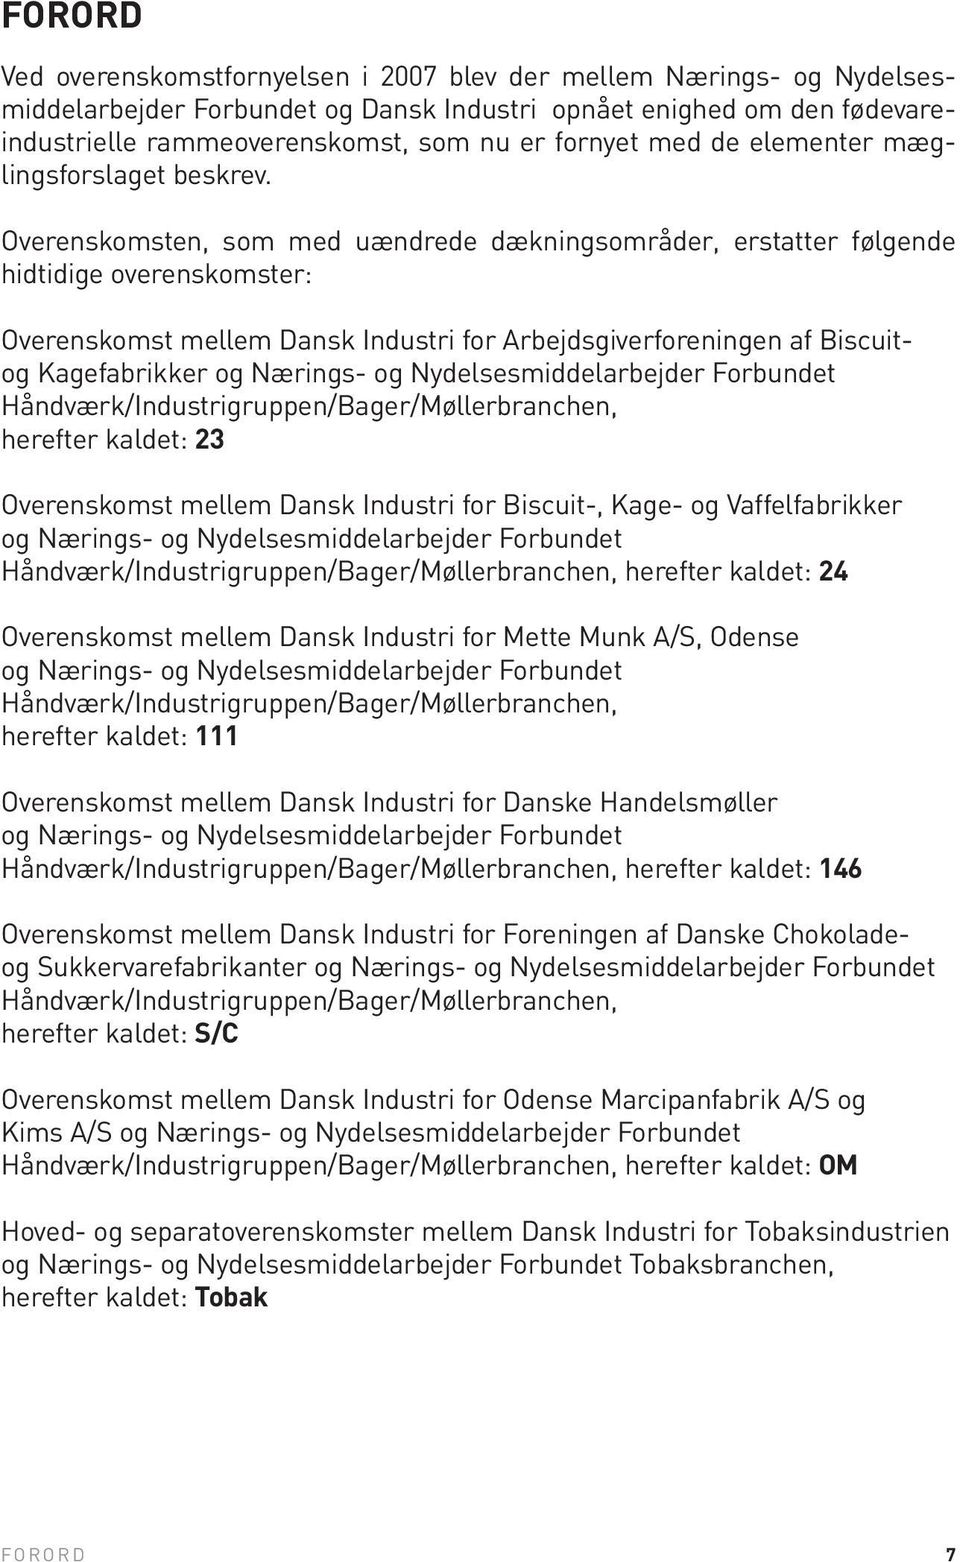 Overenskomsten, som med uændrede dækningsområder, erstatter følgende hidtidige overenskomster: Overenskomst mellem Dansk Industri for Arbejdsgiverforeningen af Biscuitog Kagefabrikker og Nærings- og